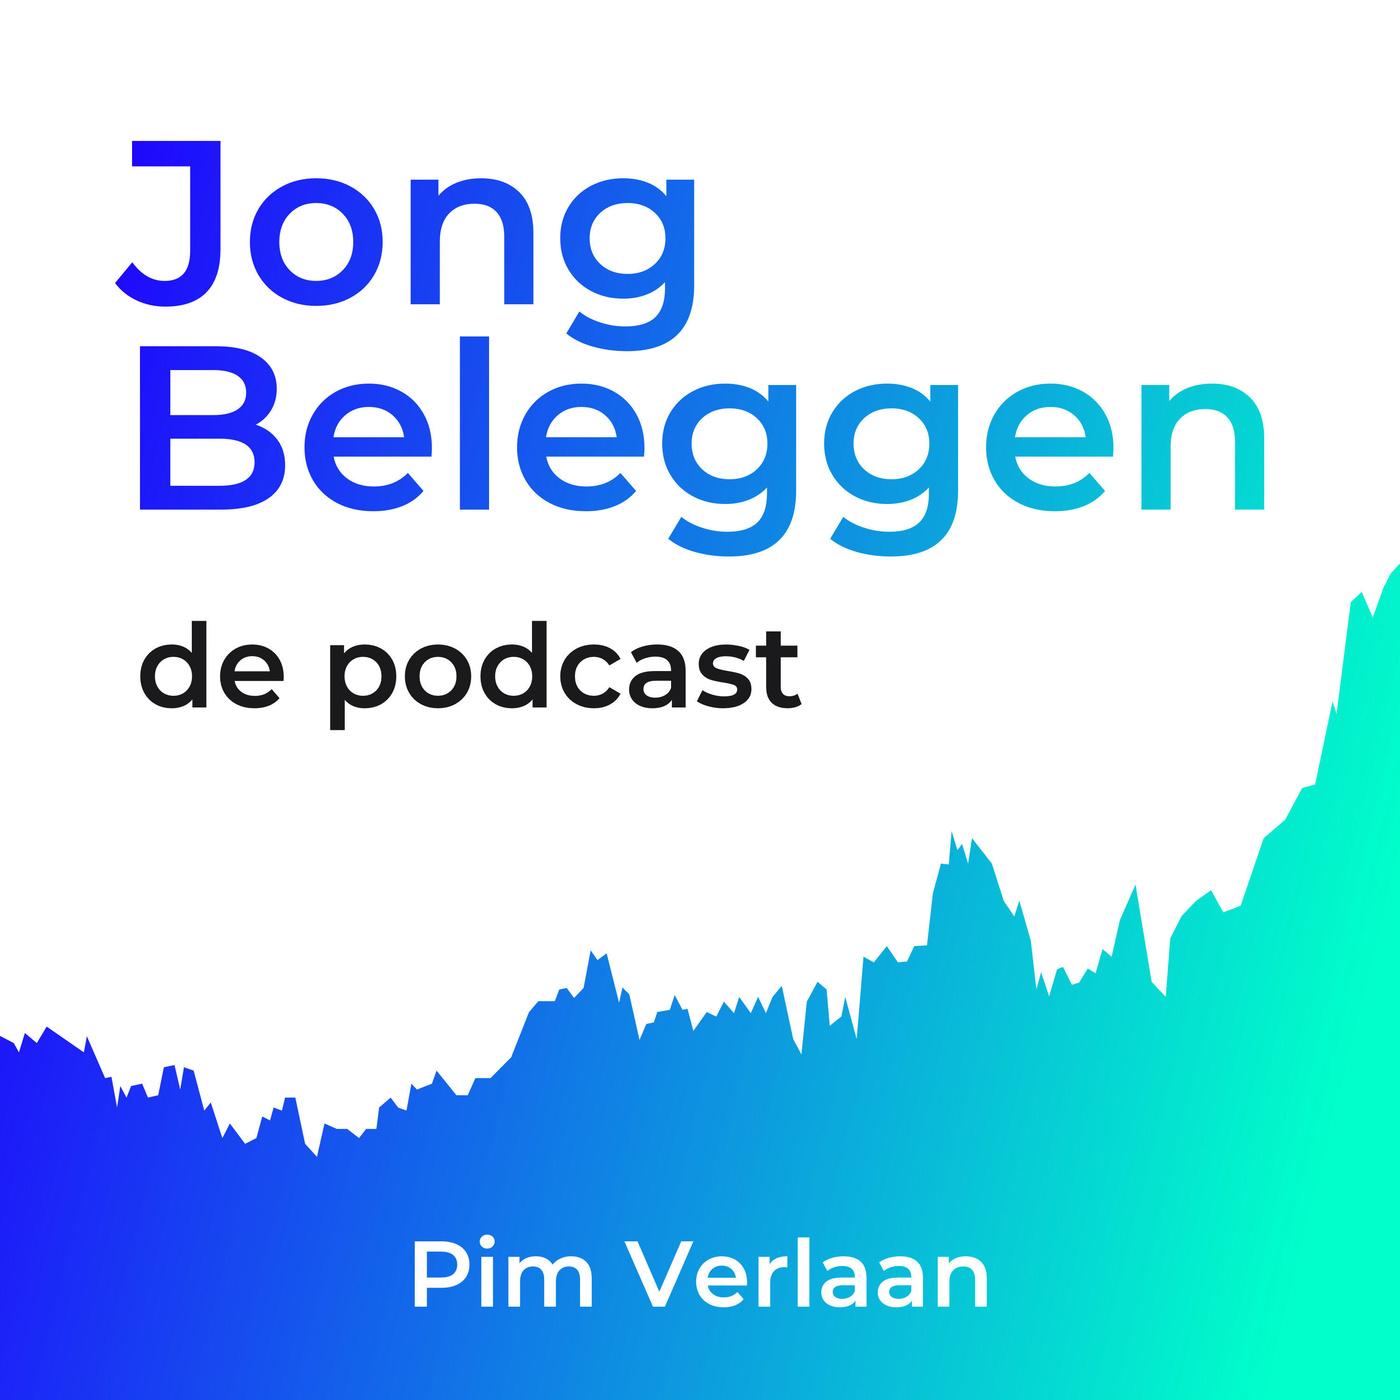 Jong Beleggen, de Podcast trailer